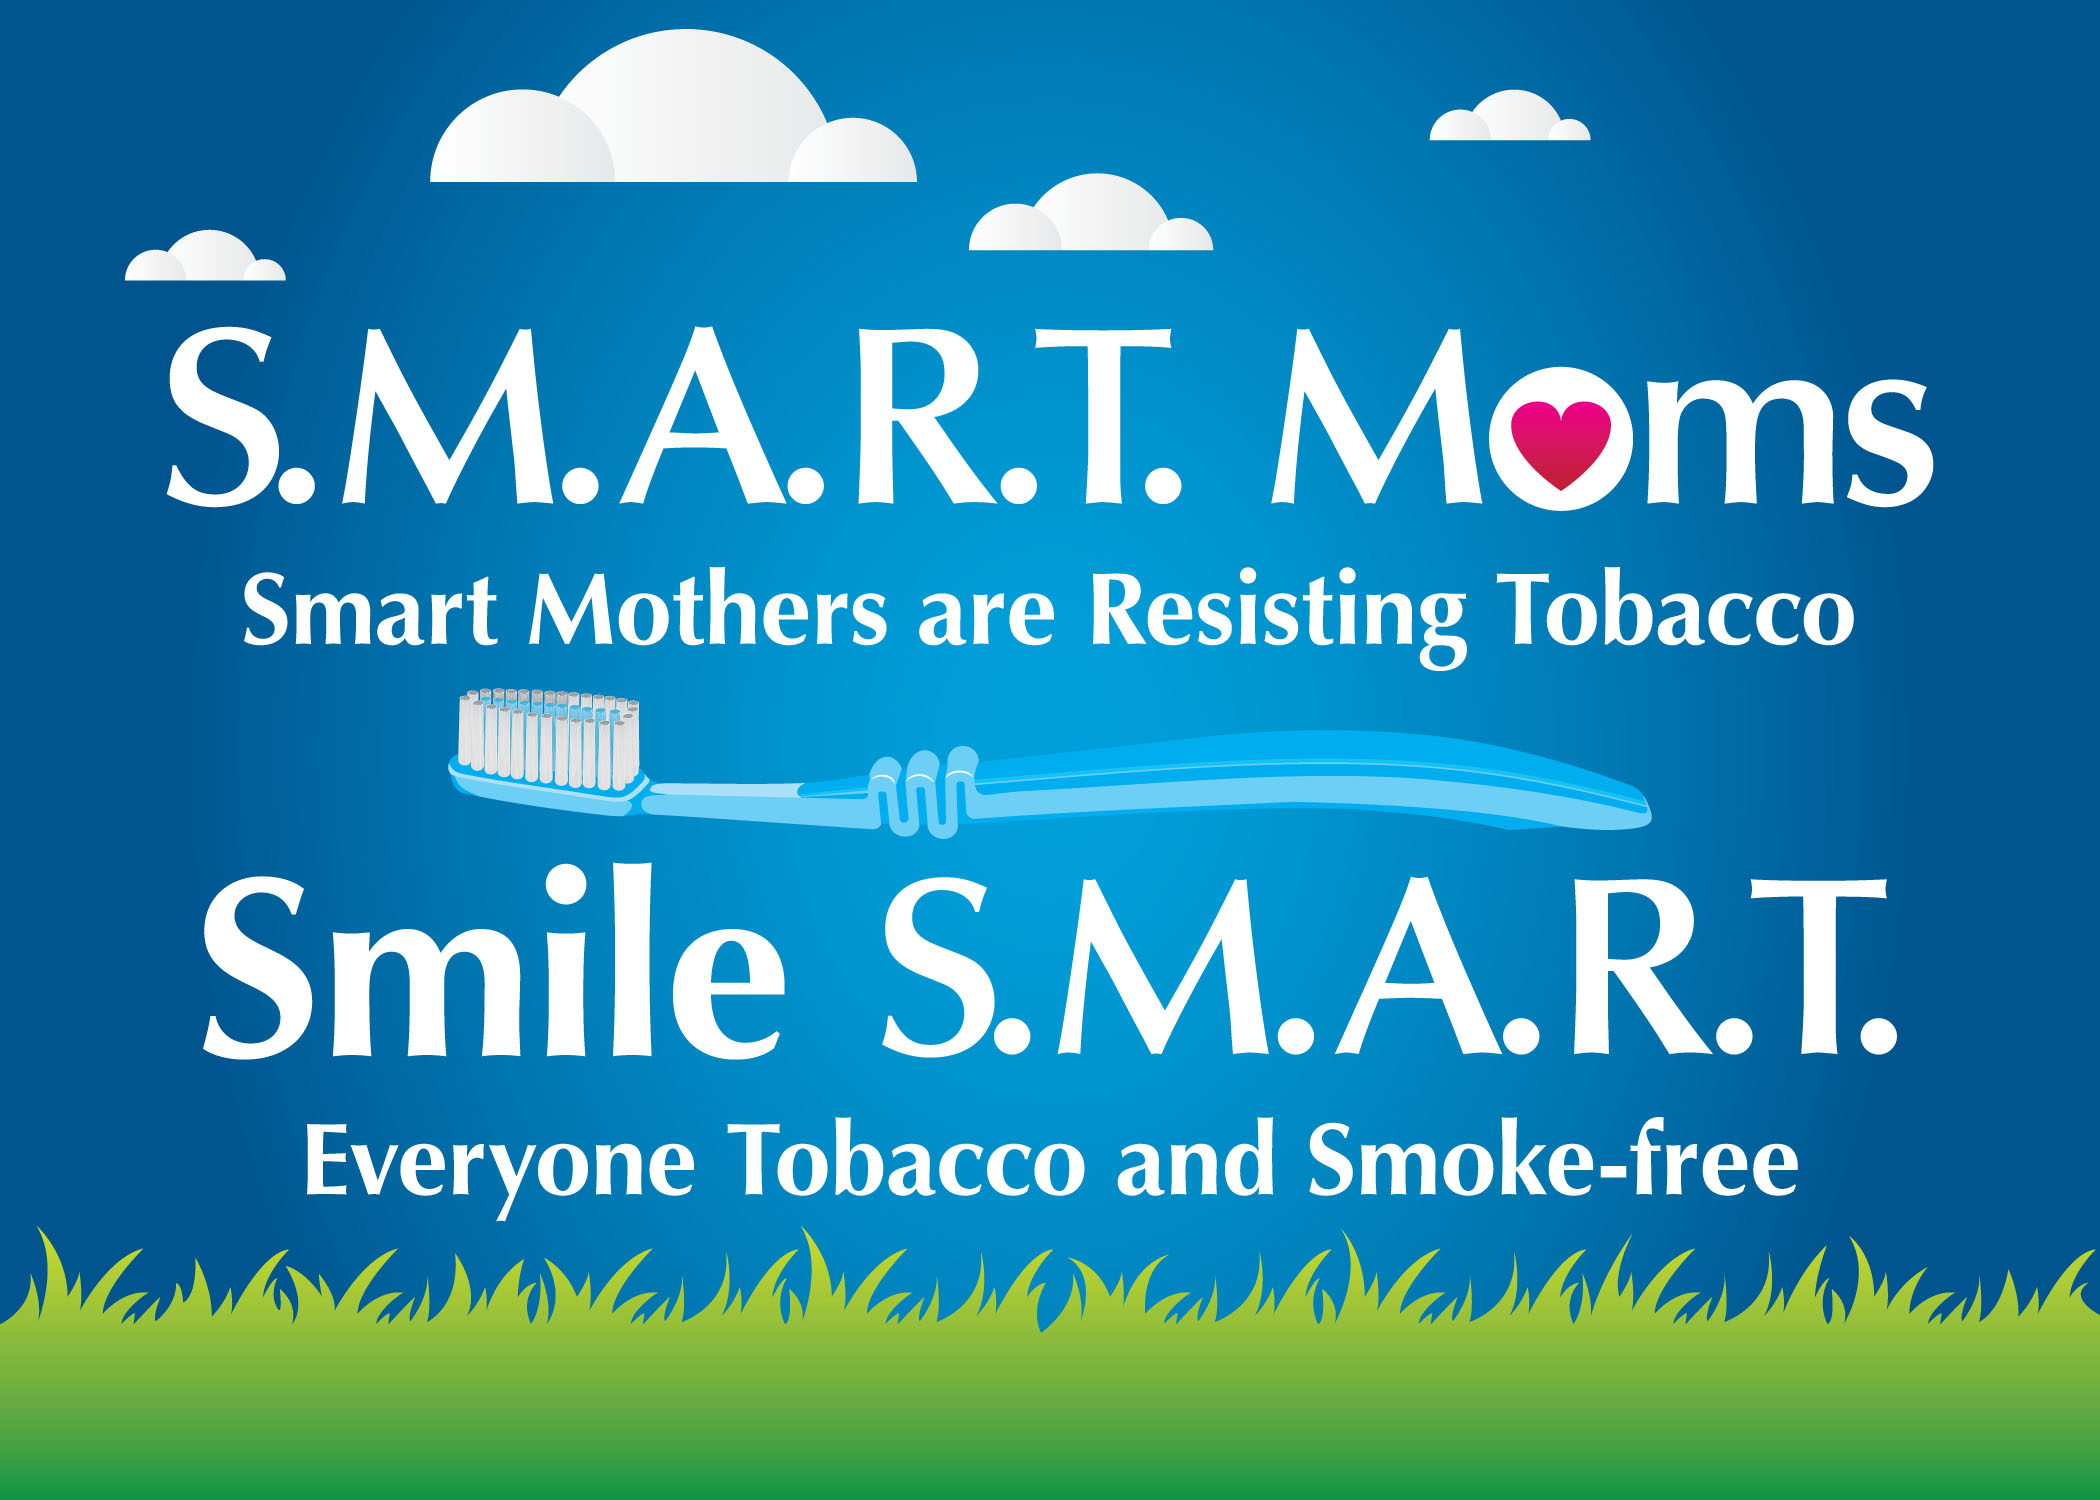 S.M.A.R.T. Moms & Smile S.M.A.R.T.